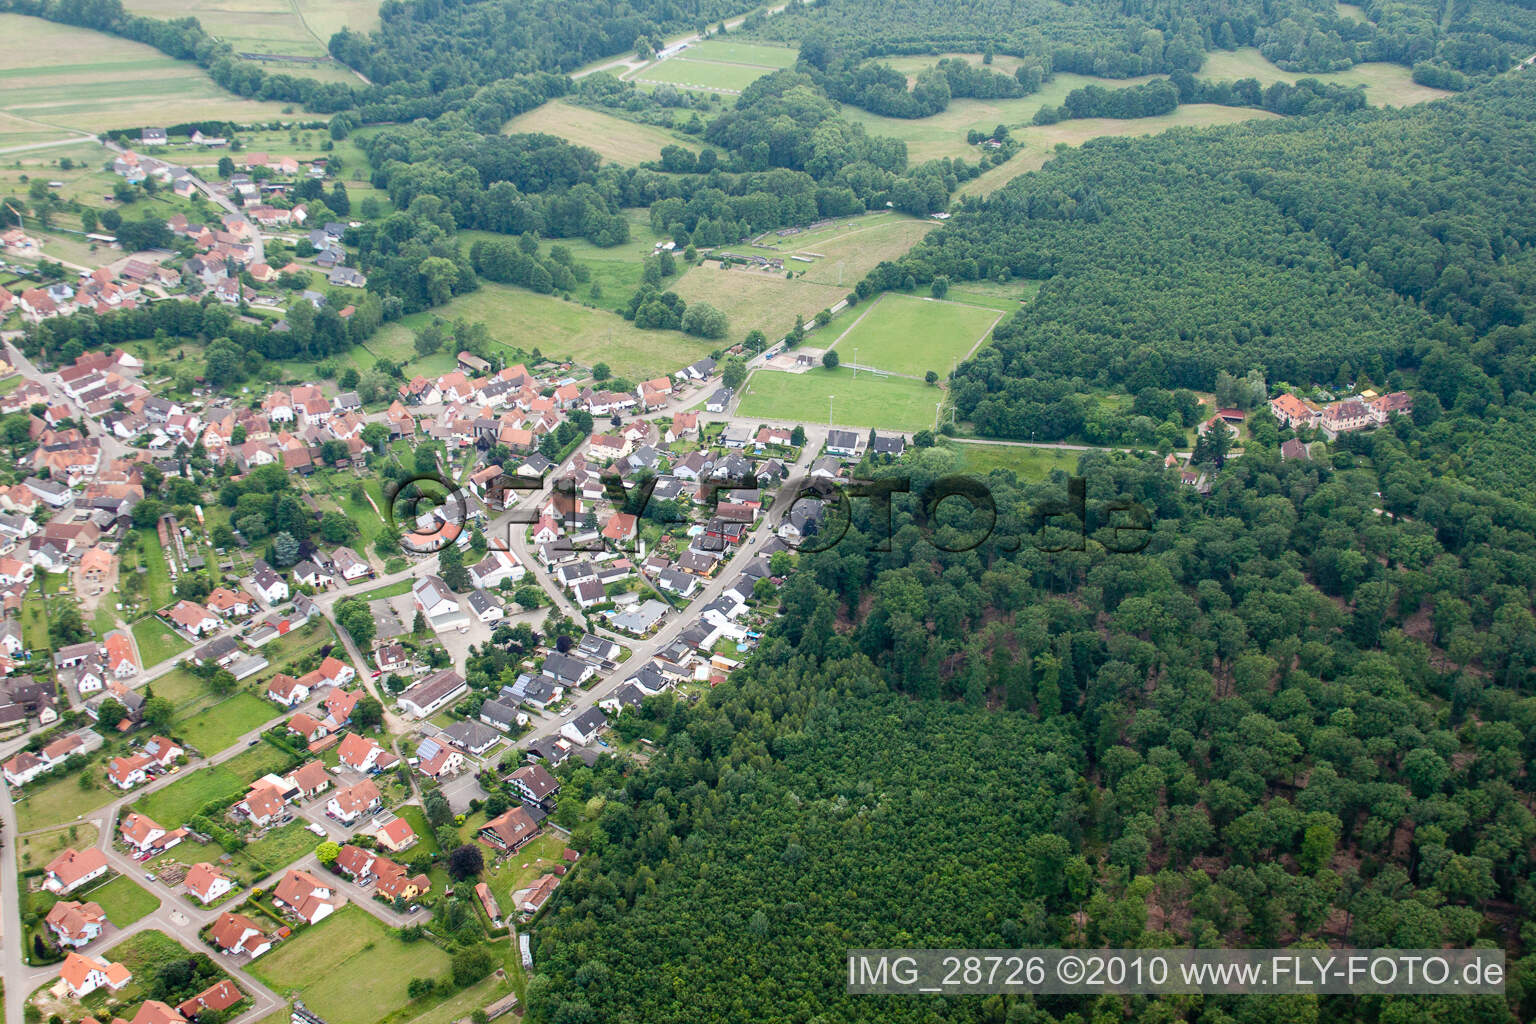 Scheibenhardt in Scheibenhard in the state Bas-Rhin, France viewn from the air